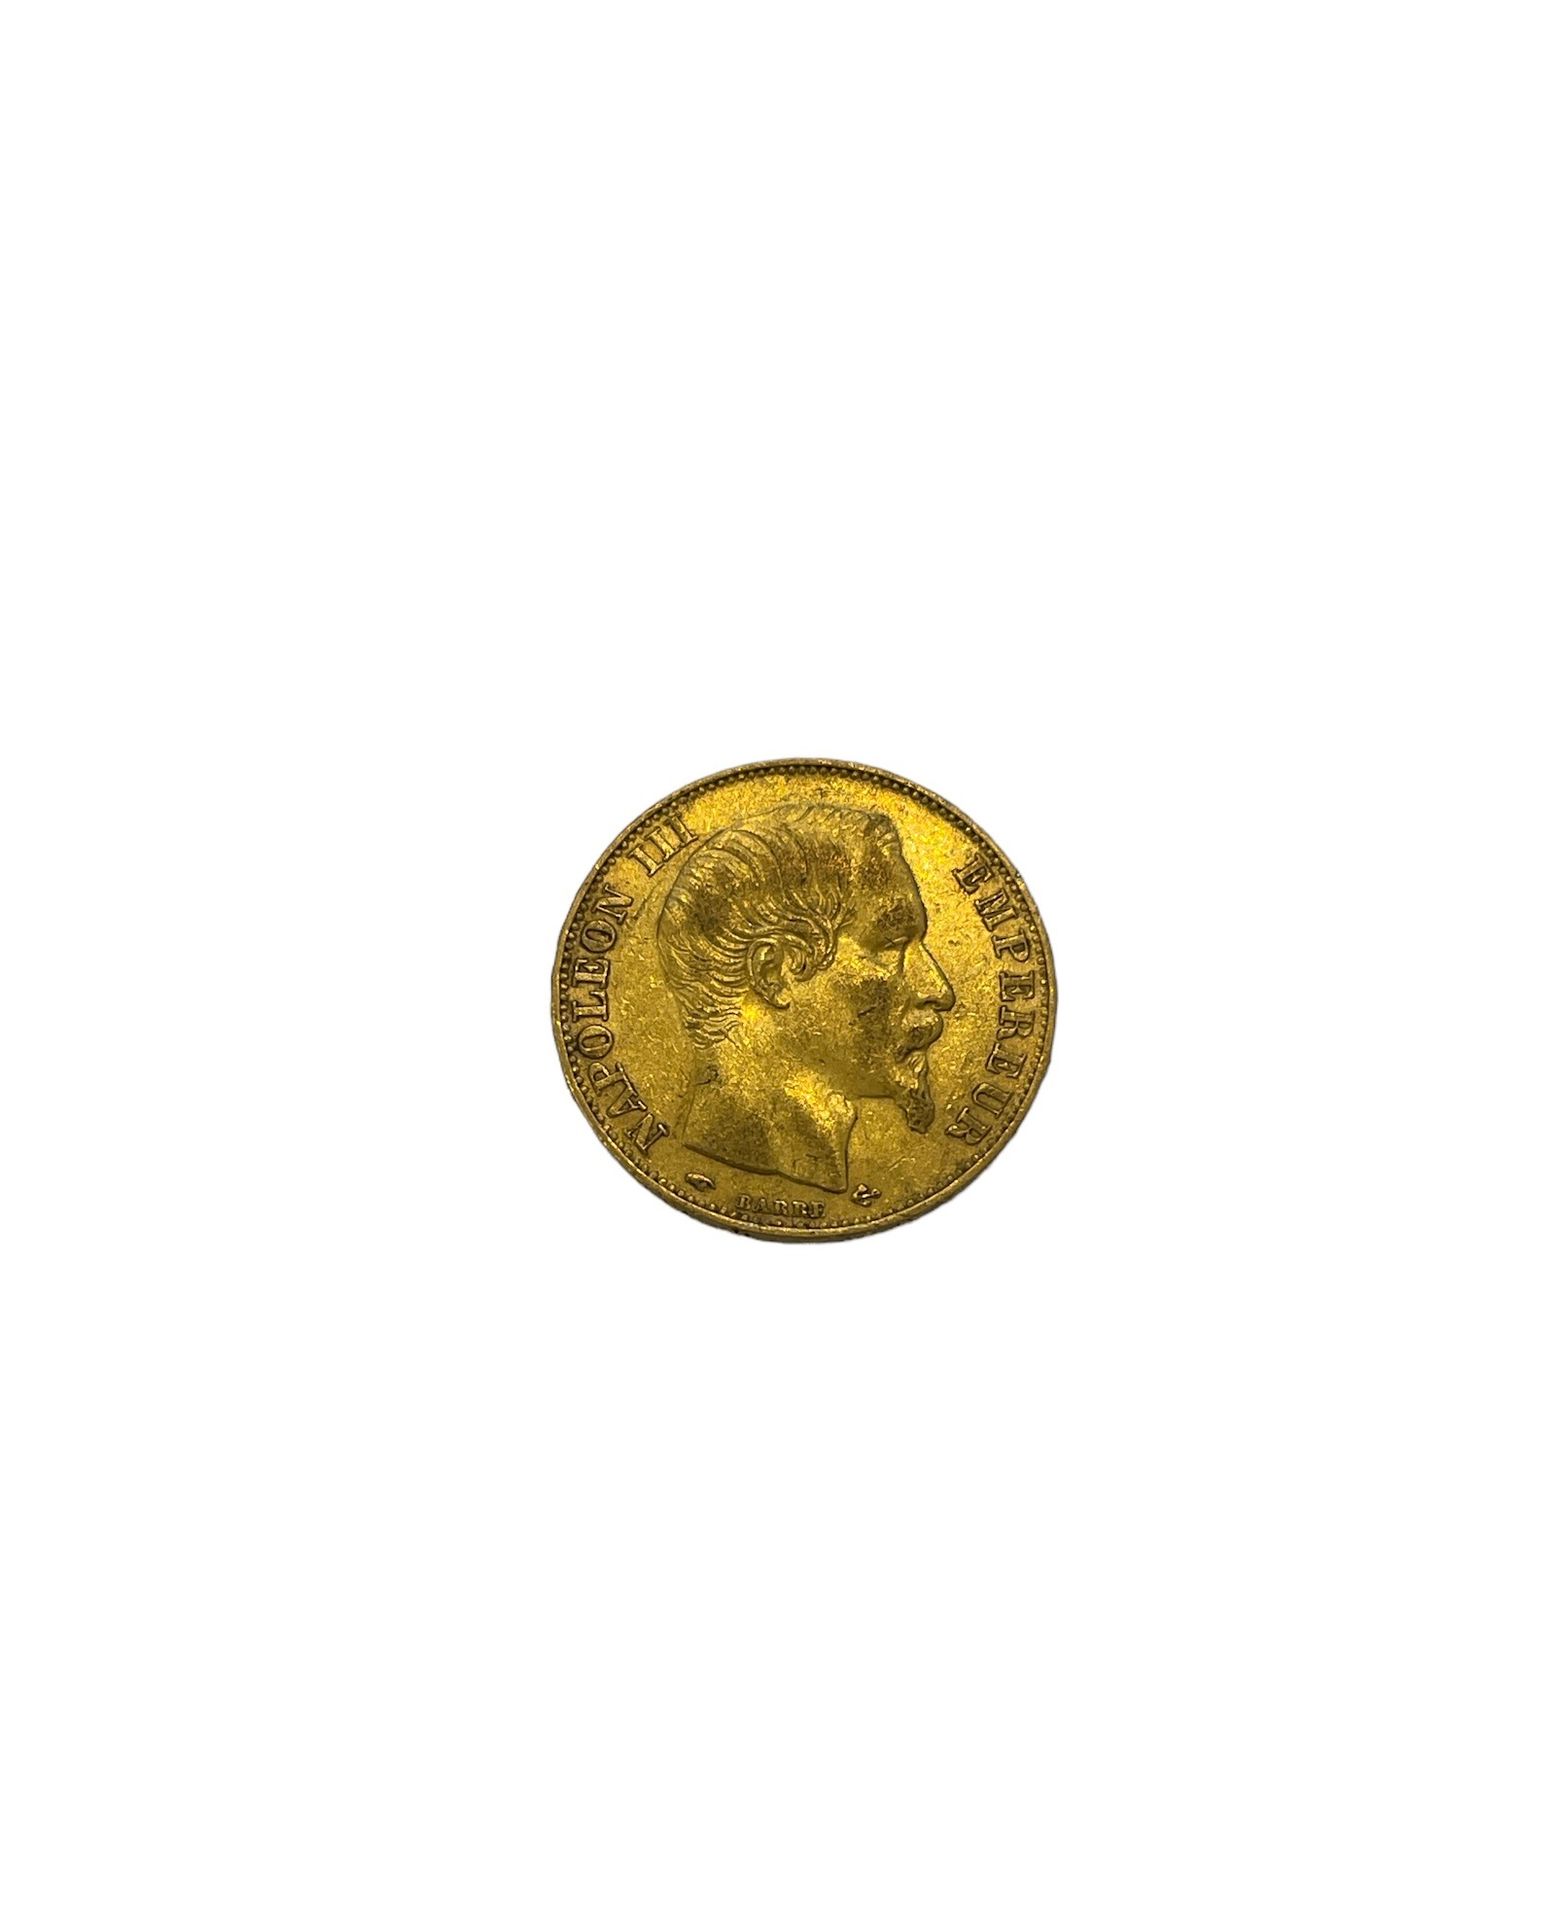 Null FRANKREICH
1 Münze 20 Francs Gold Napoleon III.
Gewicht: 7 g